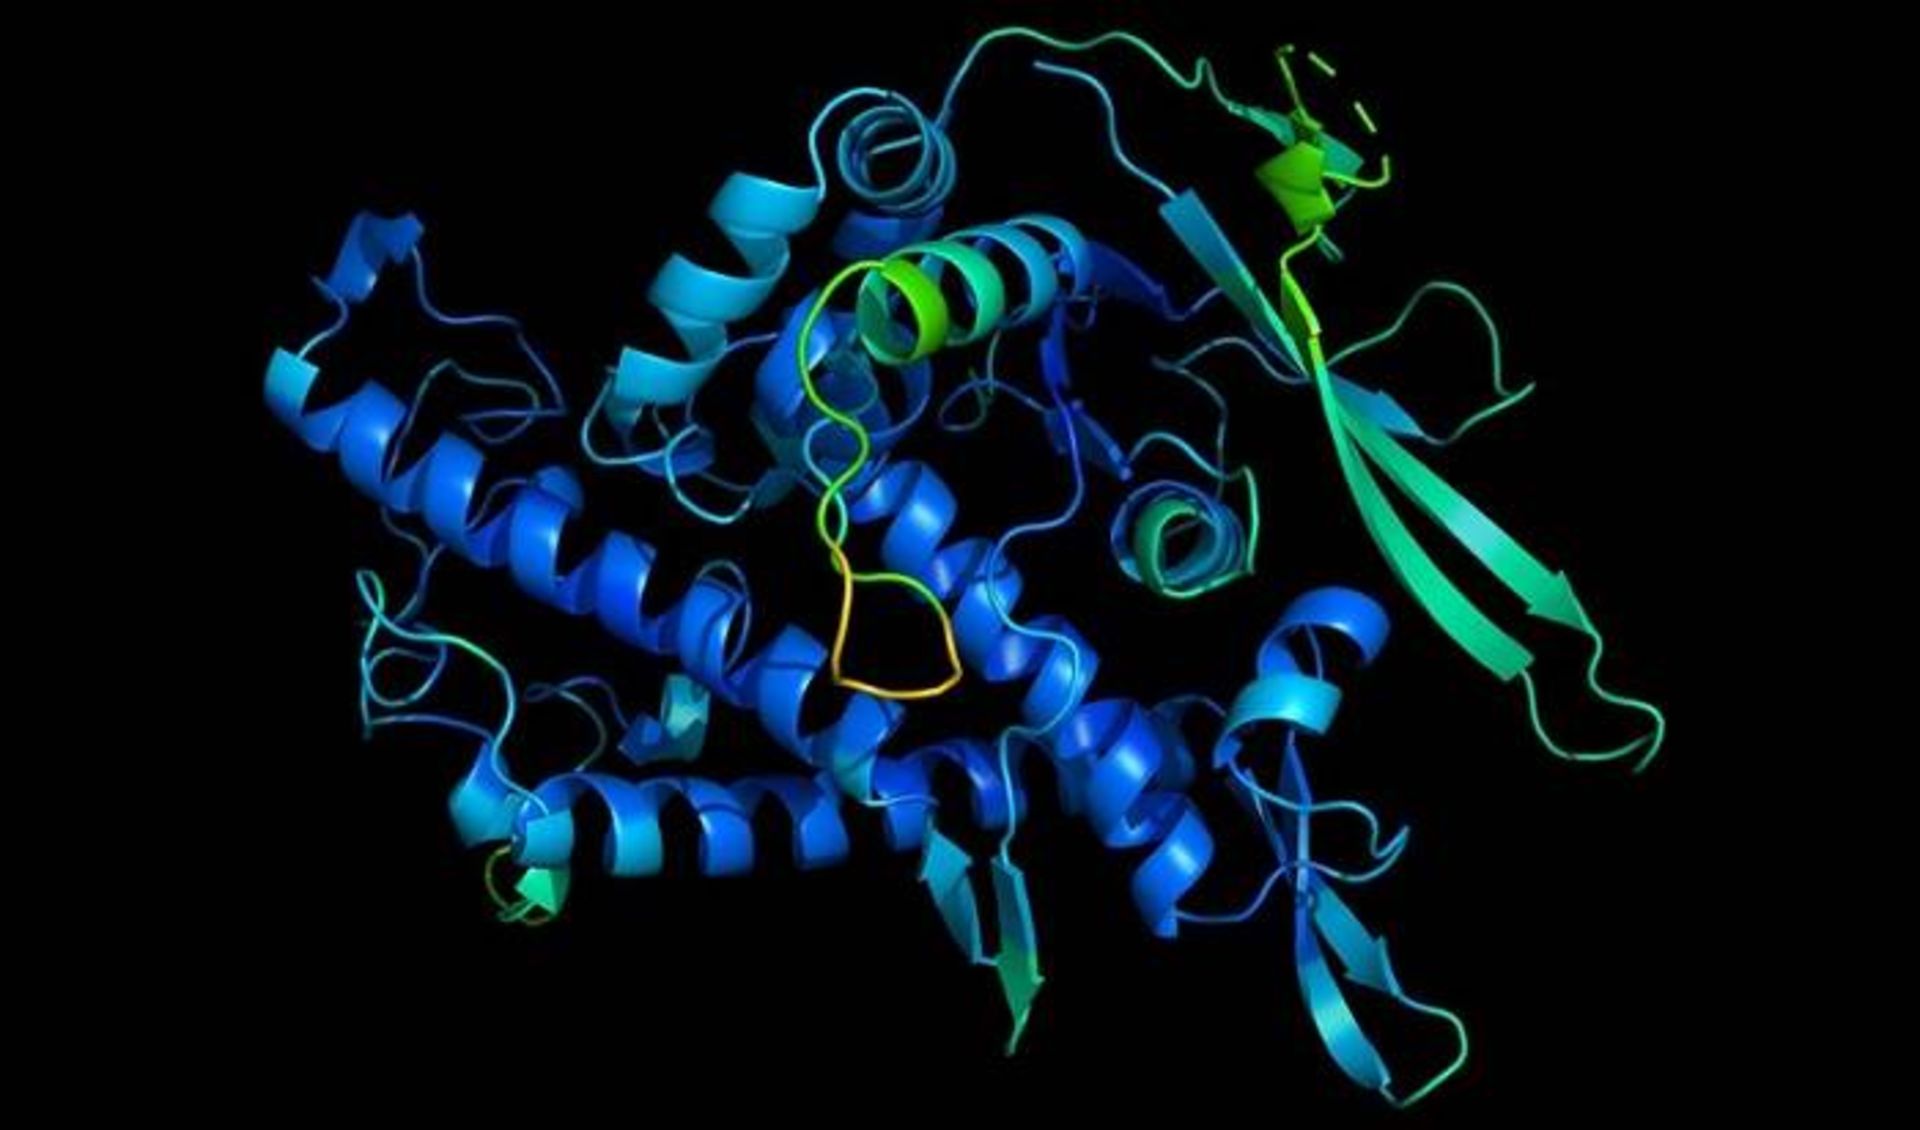 مرجع متخصصين ايران ساختار سه بعدي پروتئين / 3D structure of protein